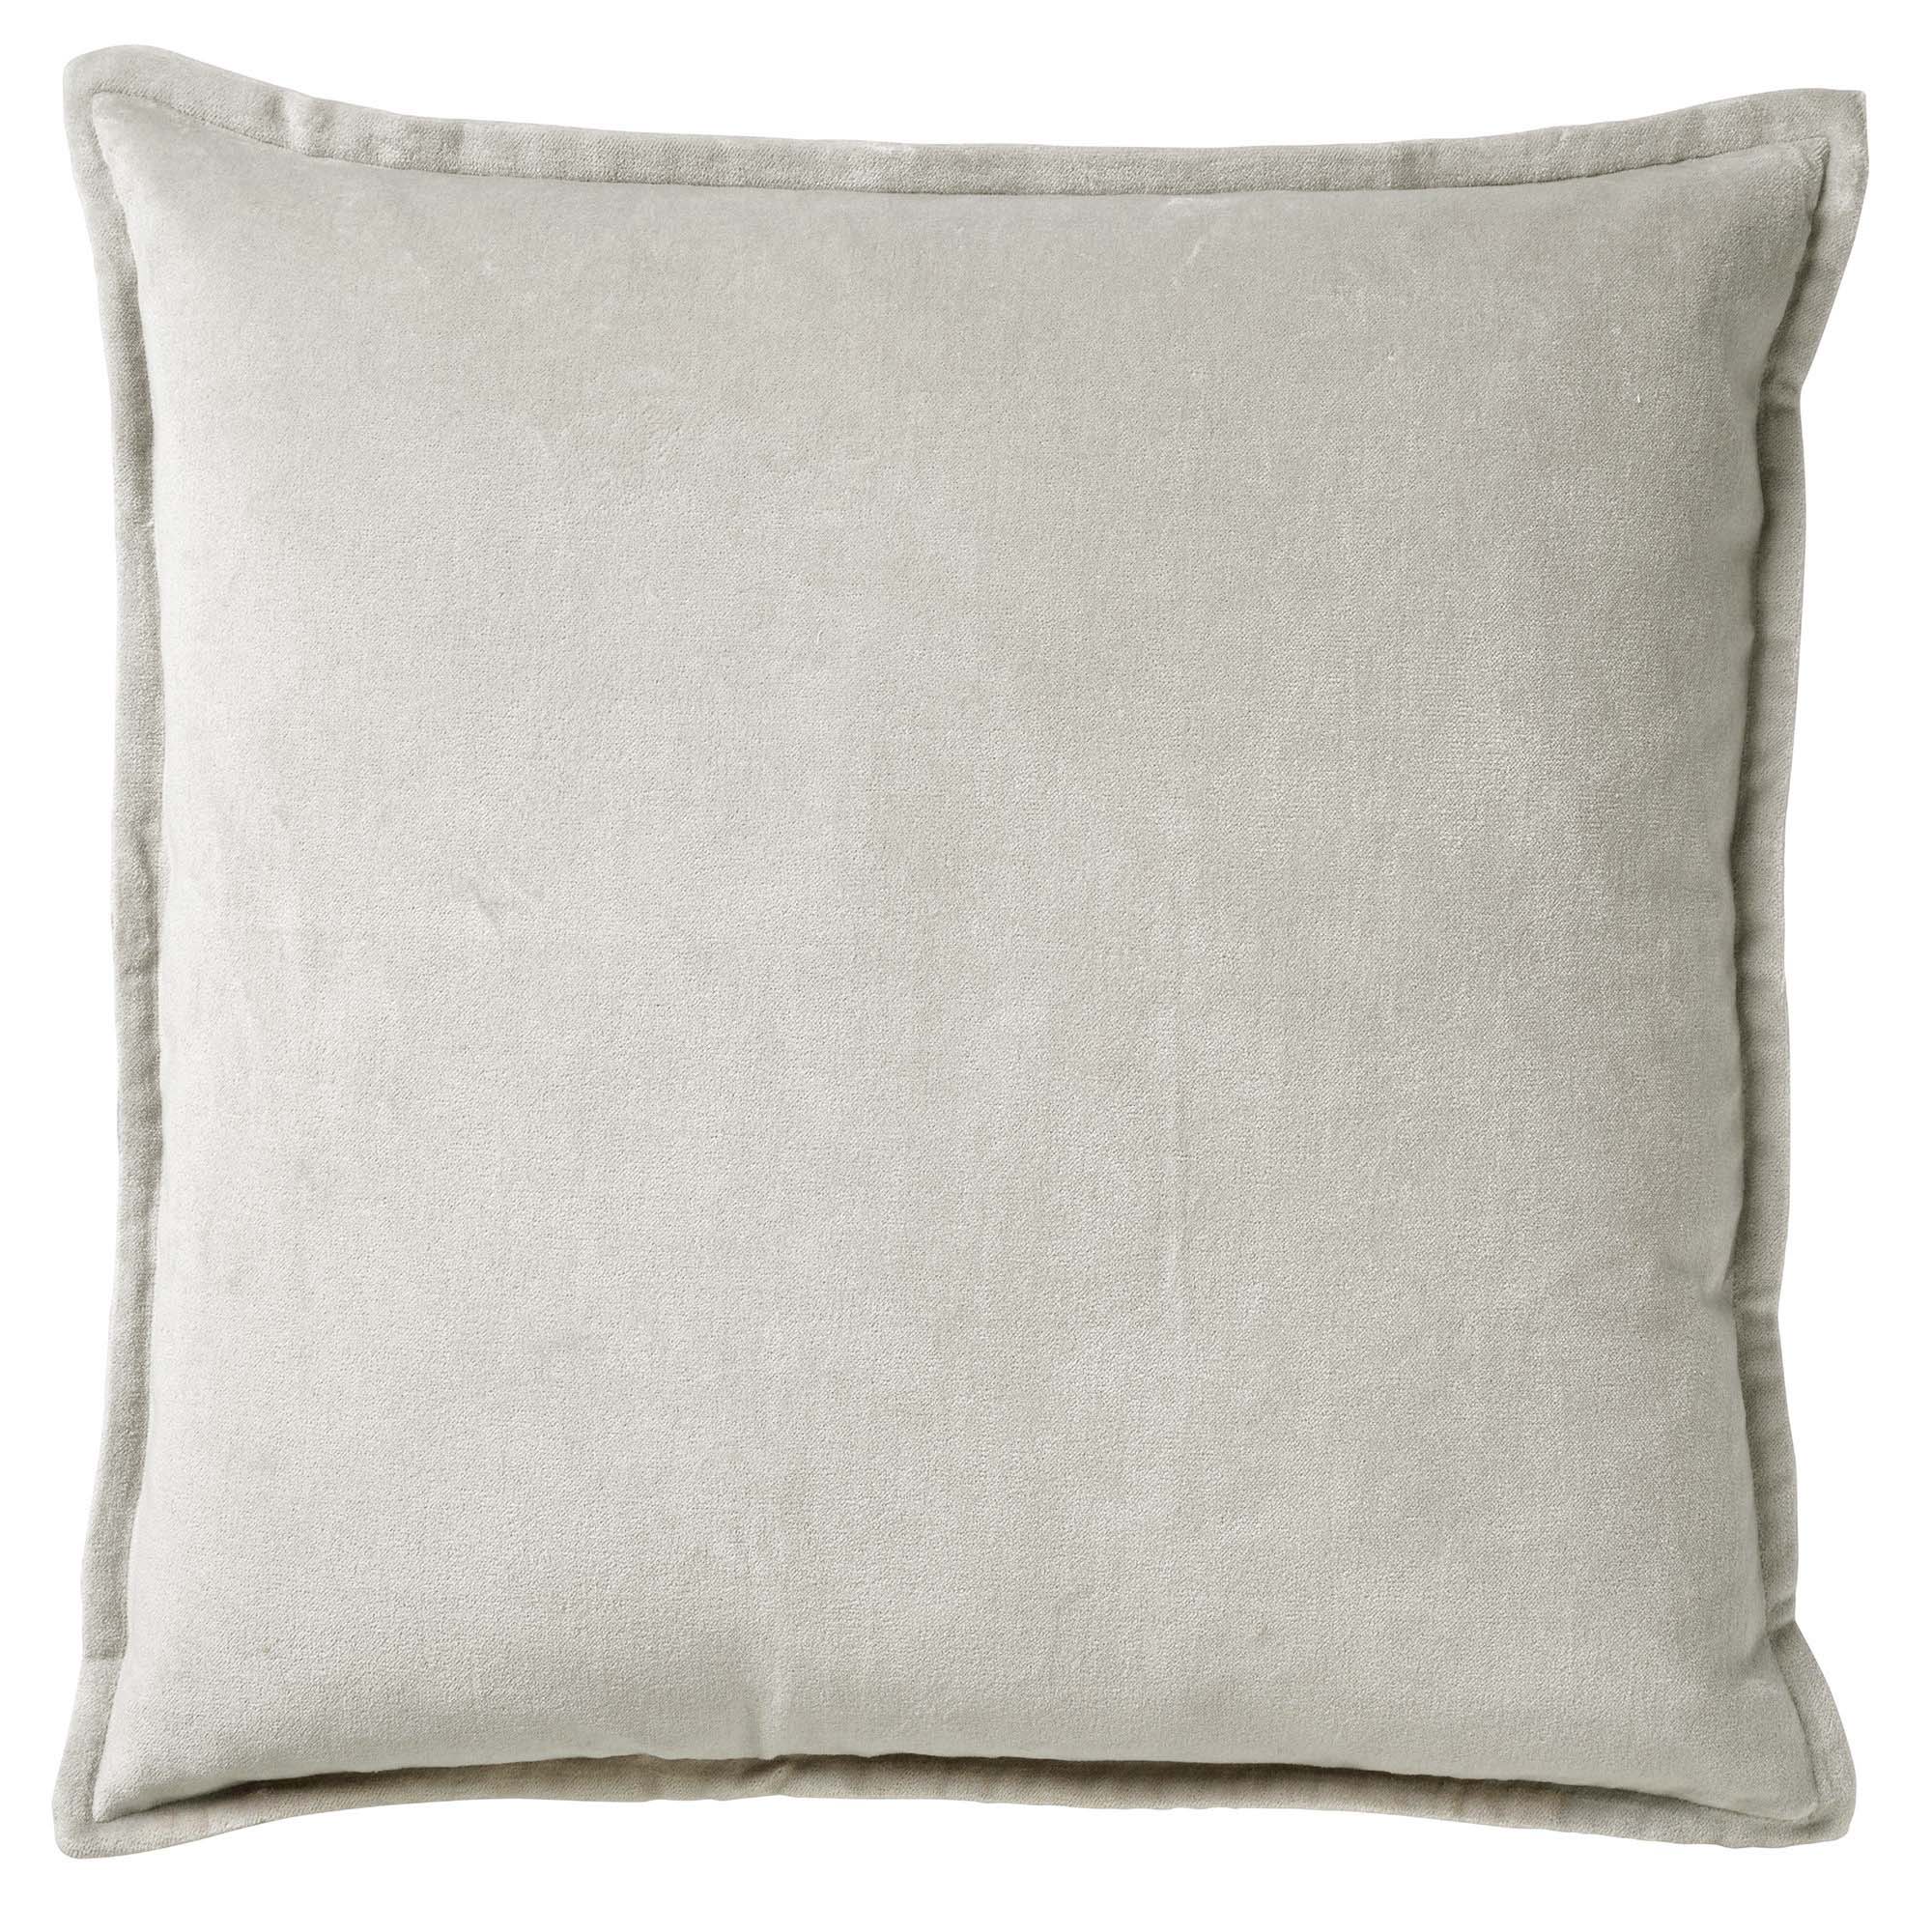 CAITH - Cushion cover 50x50 cm Micro Chip - grey